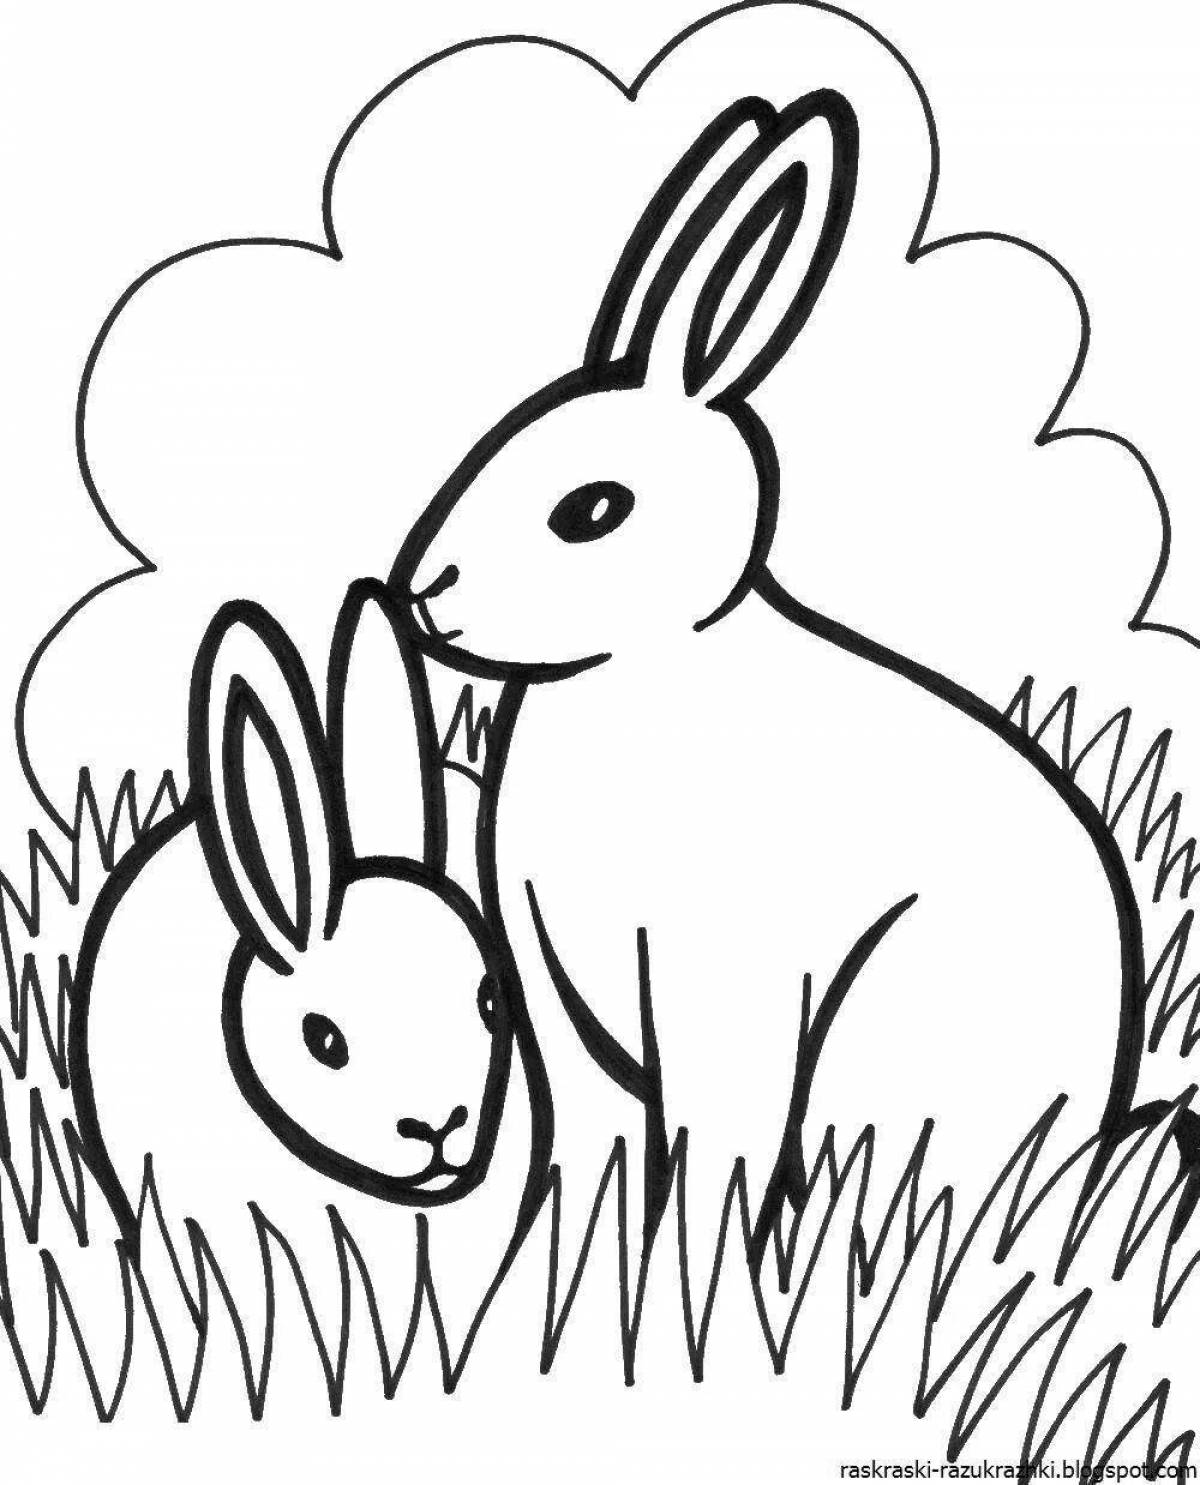 Bunny bunny adorable coloring book